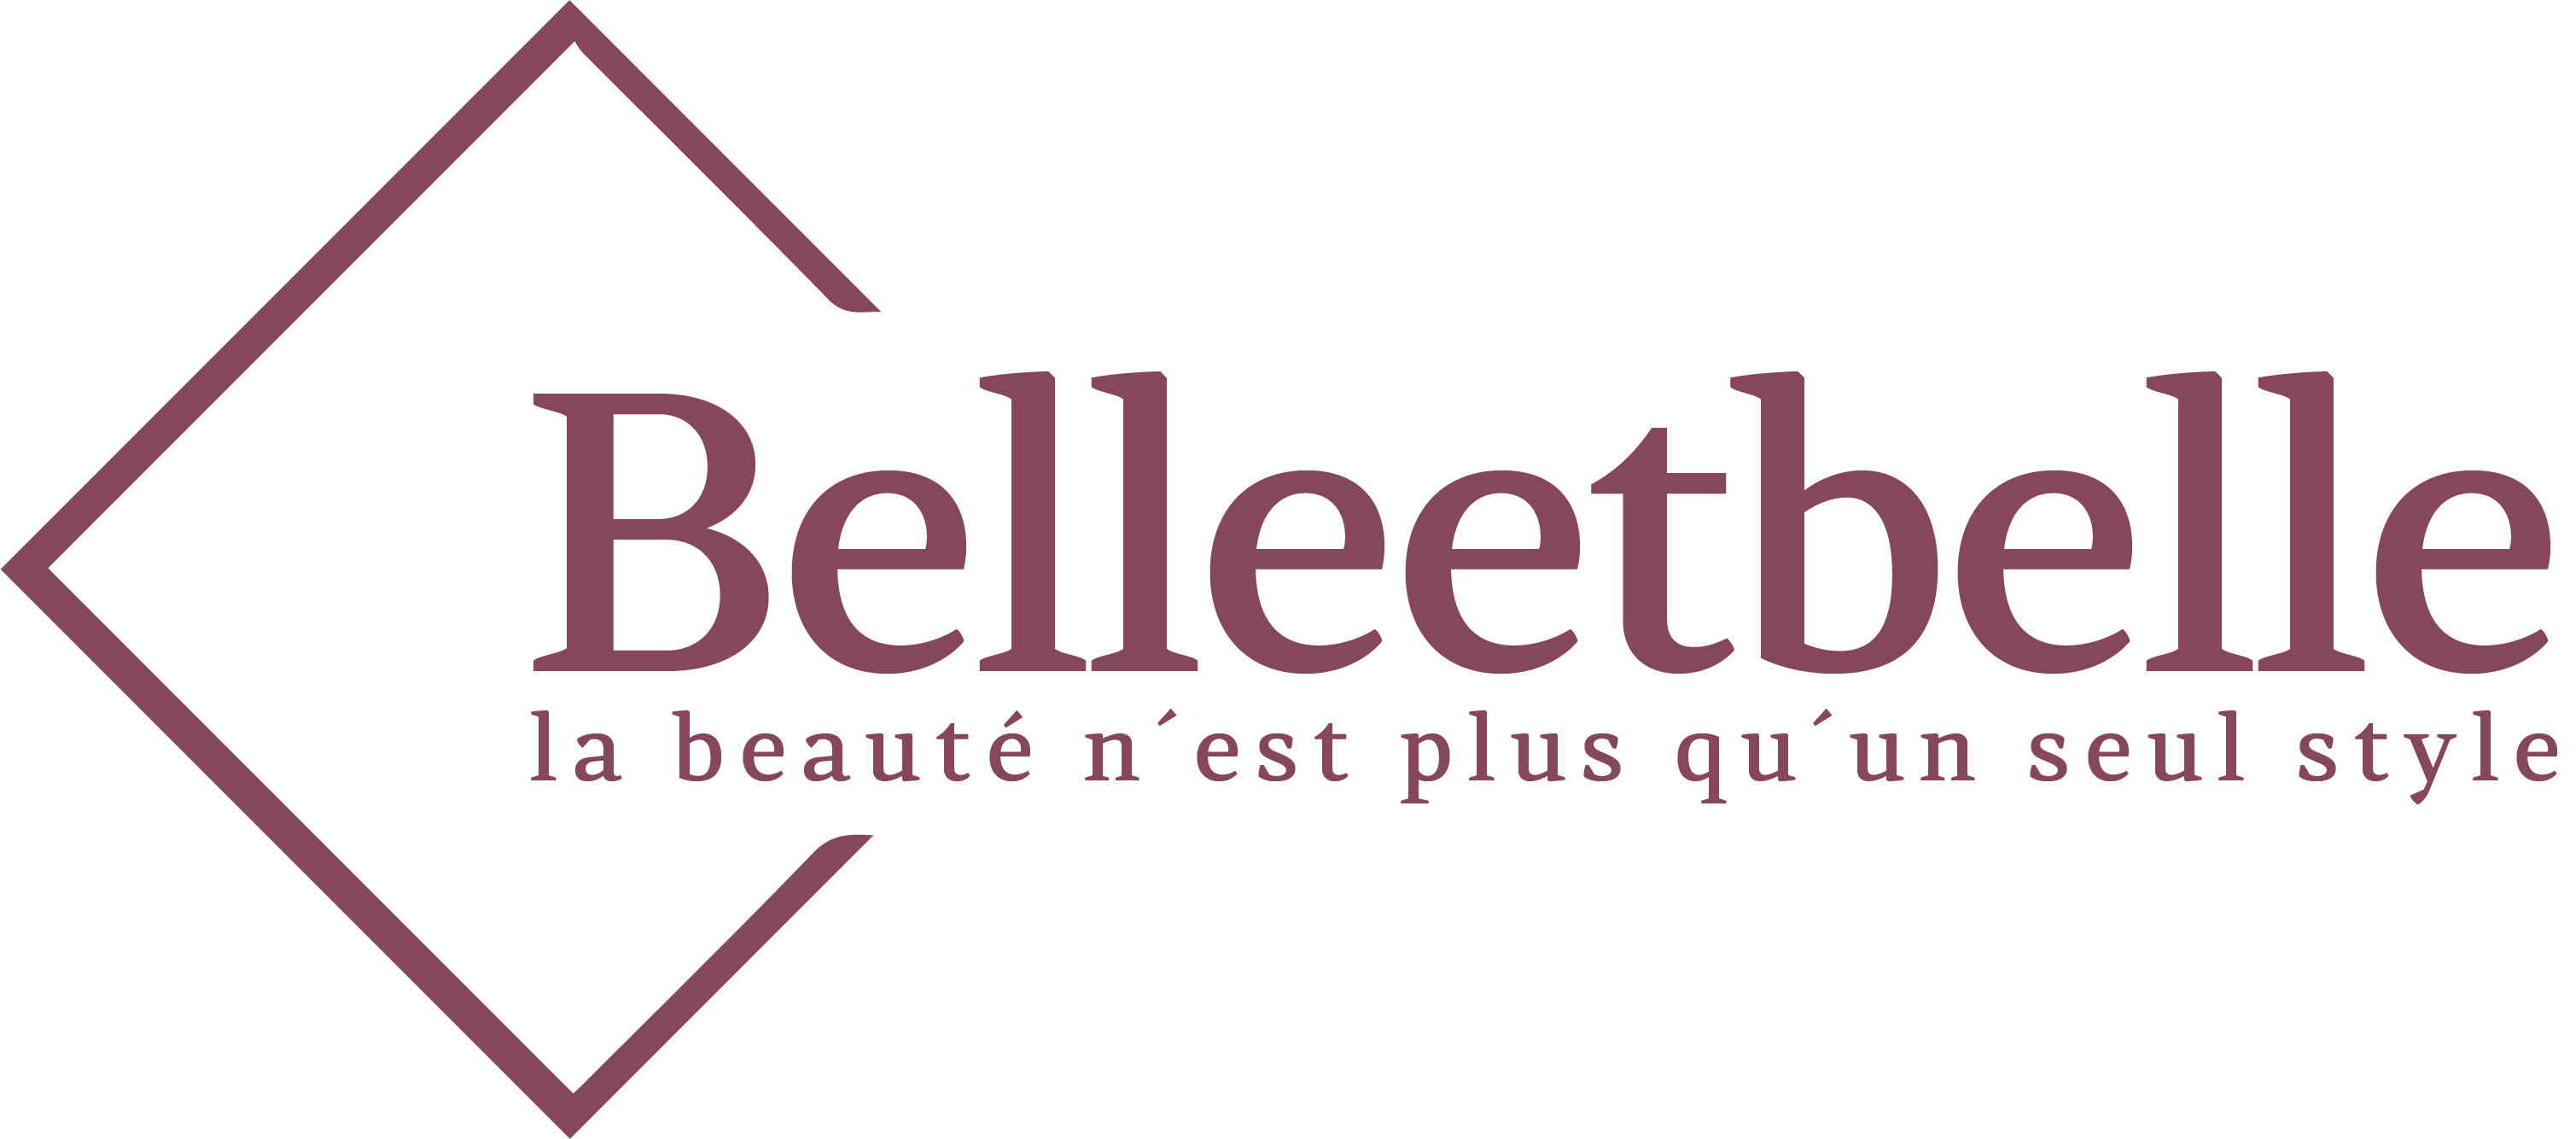 Belleetbelle Shop